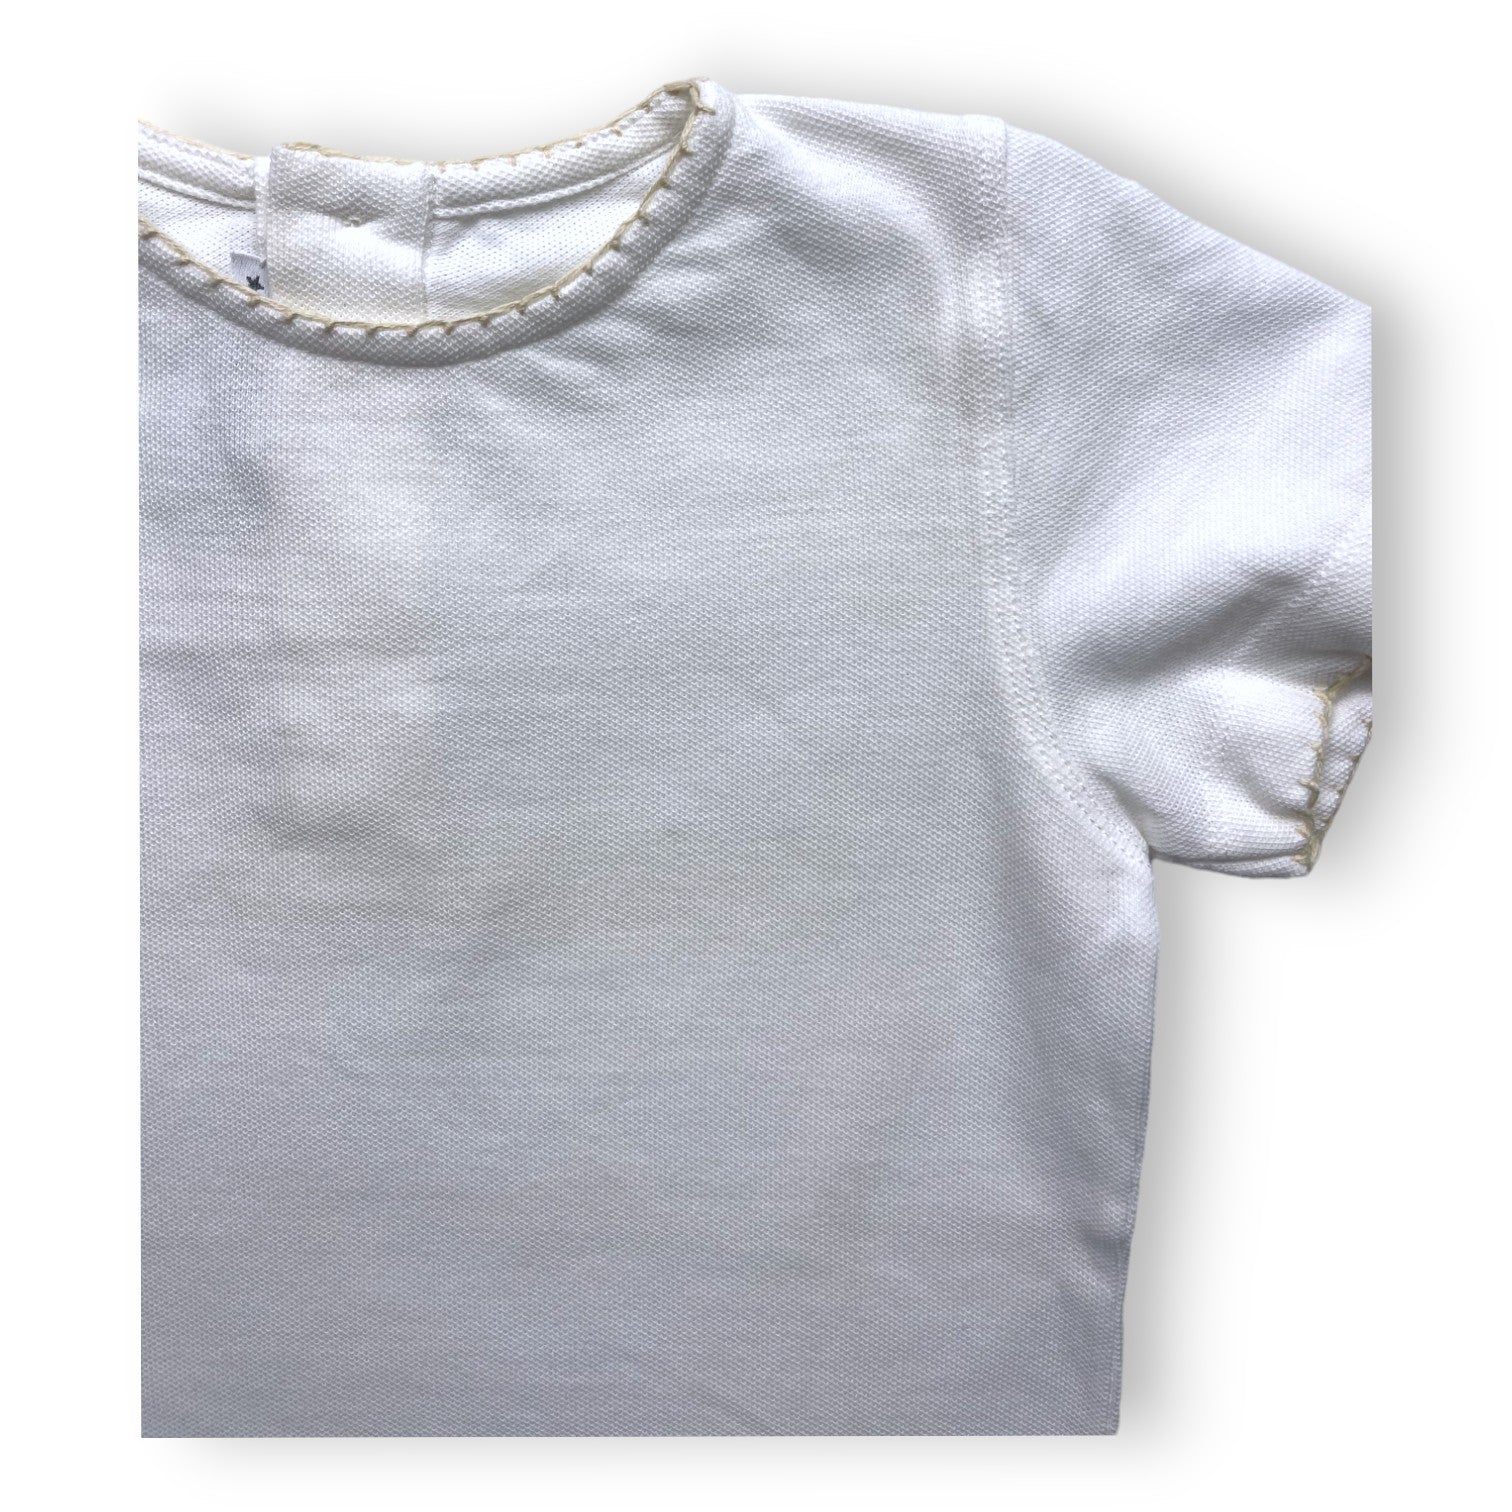 LA CHATELAINE - T shirt en coton liseré beige - 4 ans